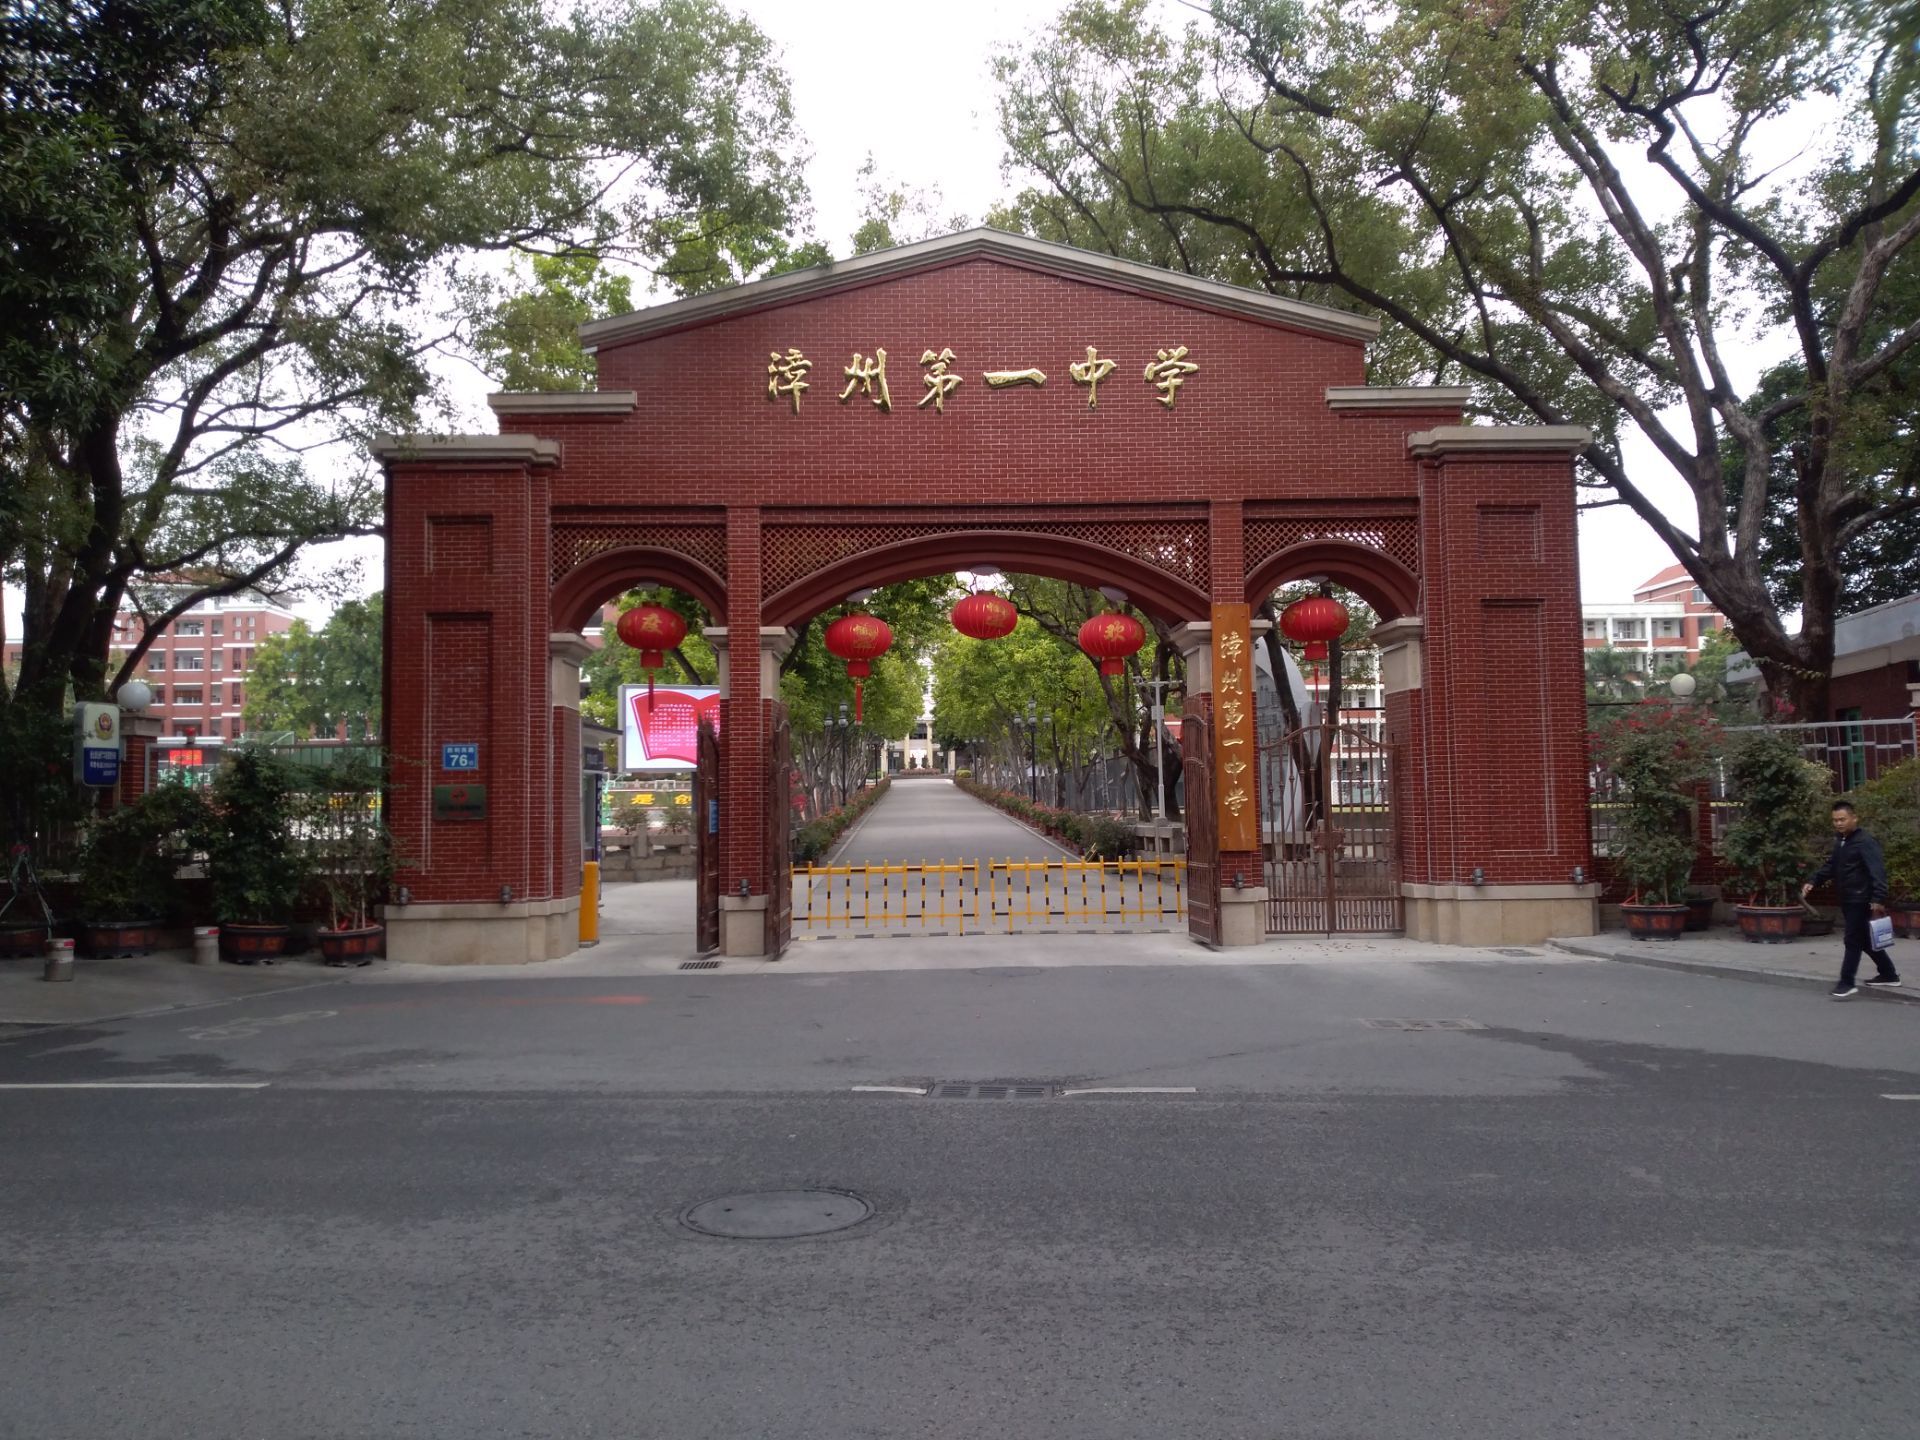 漳州第一中学是一个百年的老校,位于市区中心地带,在中山公园的北面